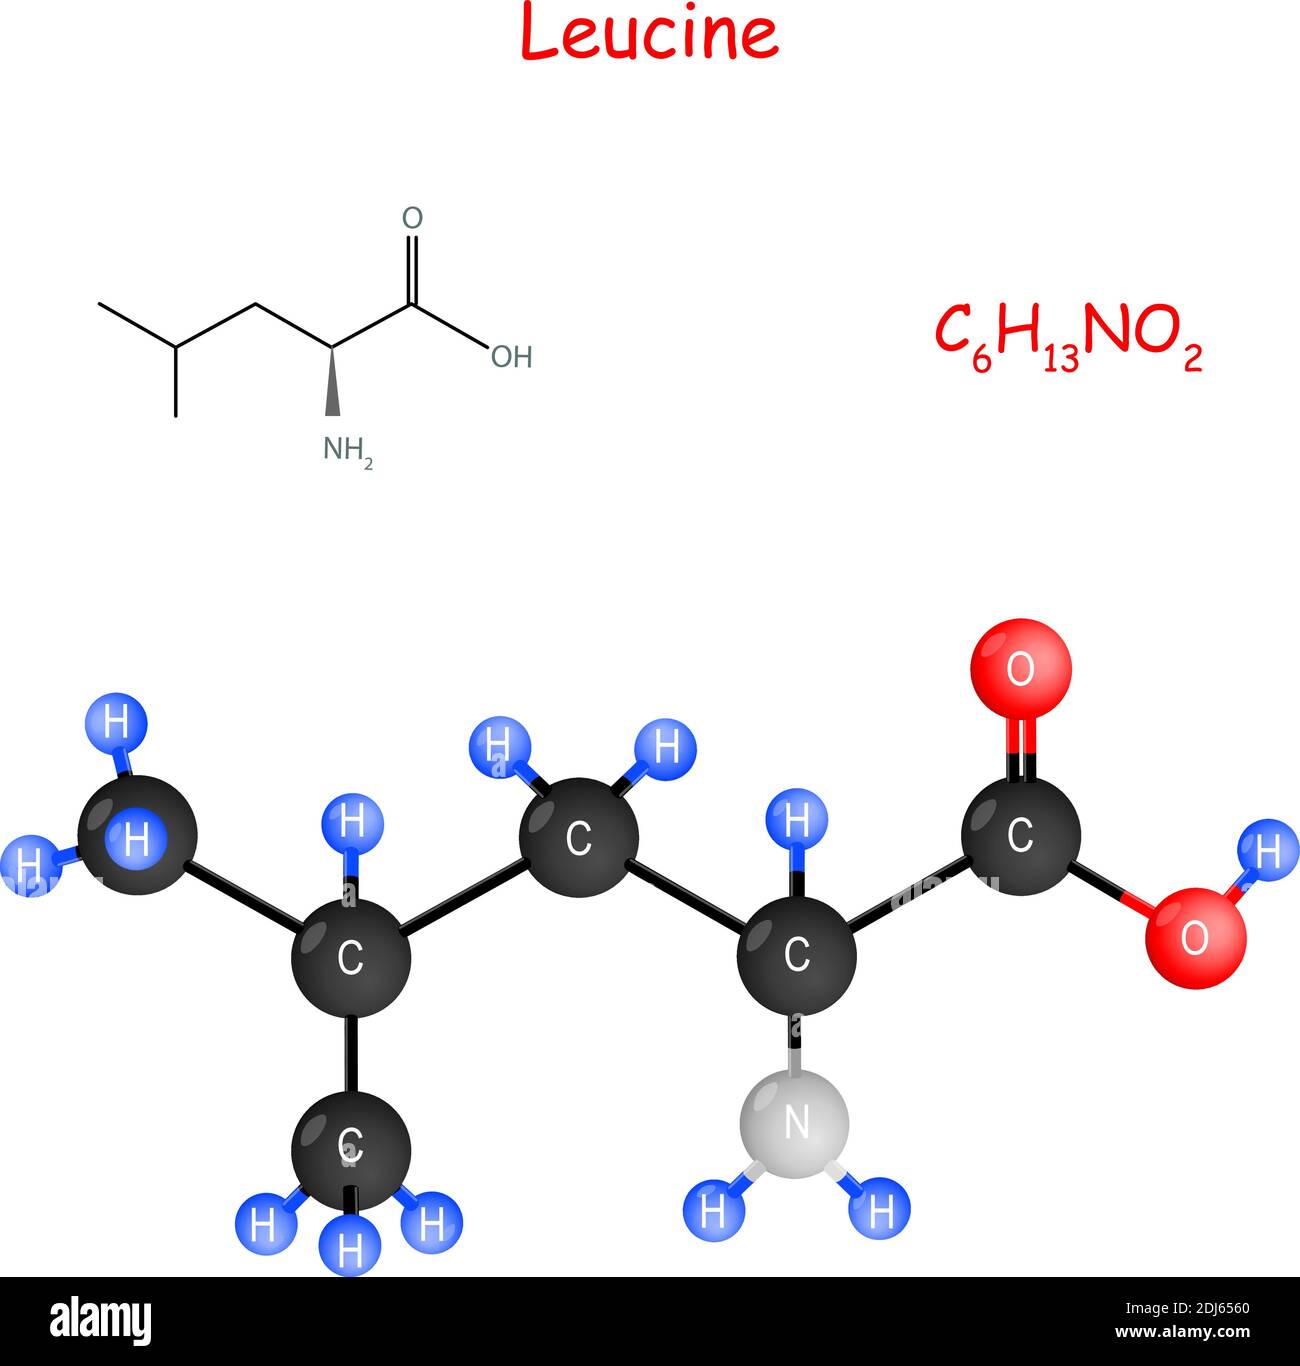 Leucin ist eine essentielle Aminosäure für die Biosynthese von Proteinen. Geschmacksverstärker. Chemische Strukturformel und Modell des Moleküls. C6H13NO2. Vektor Stock Vektor